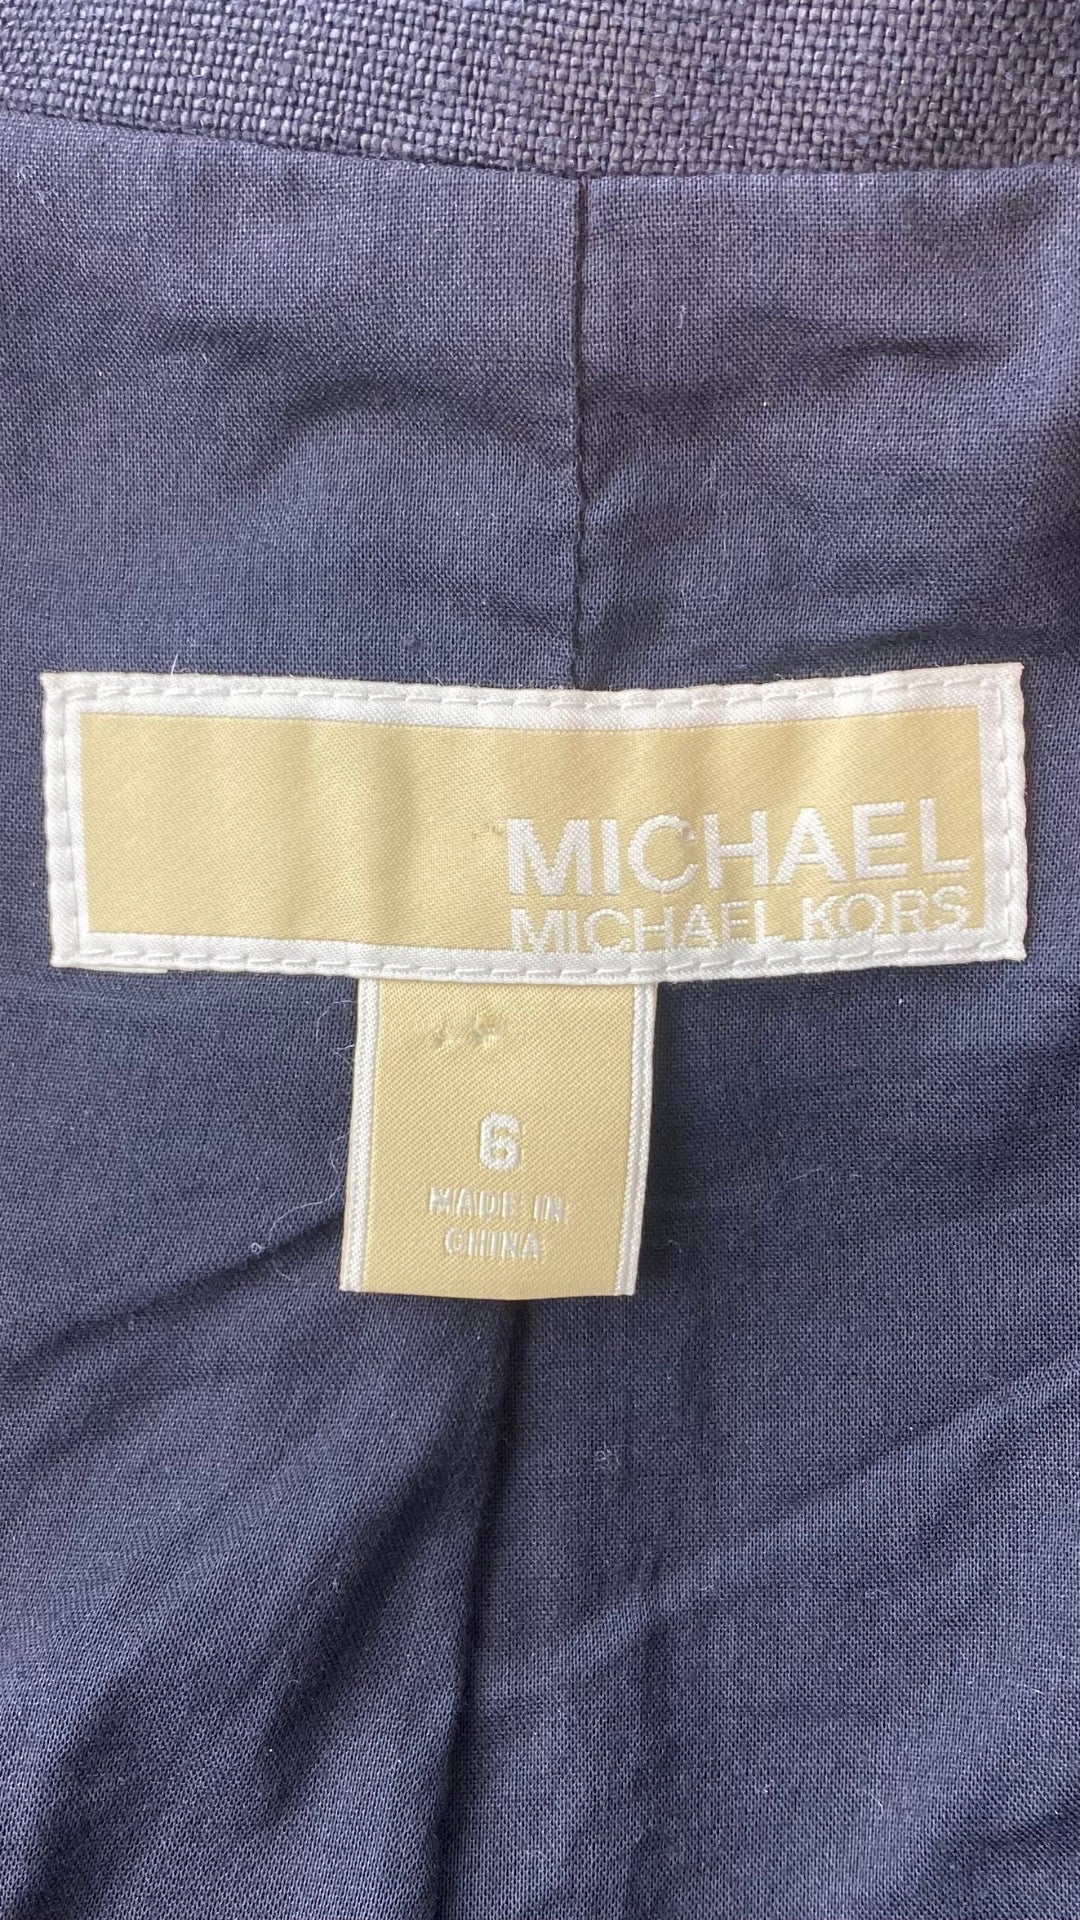 Veston estival parfait, ce blazer marine en lin Michael Kors est une base pour les températures chaudes. Vue de l'étiquette de marque et taille.